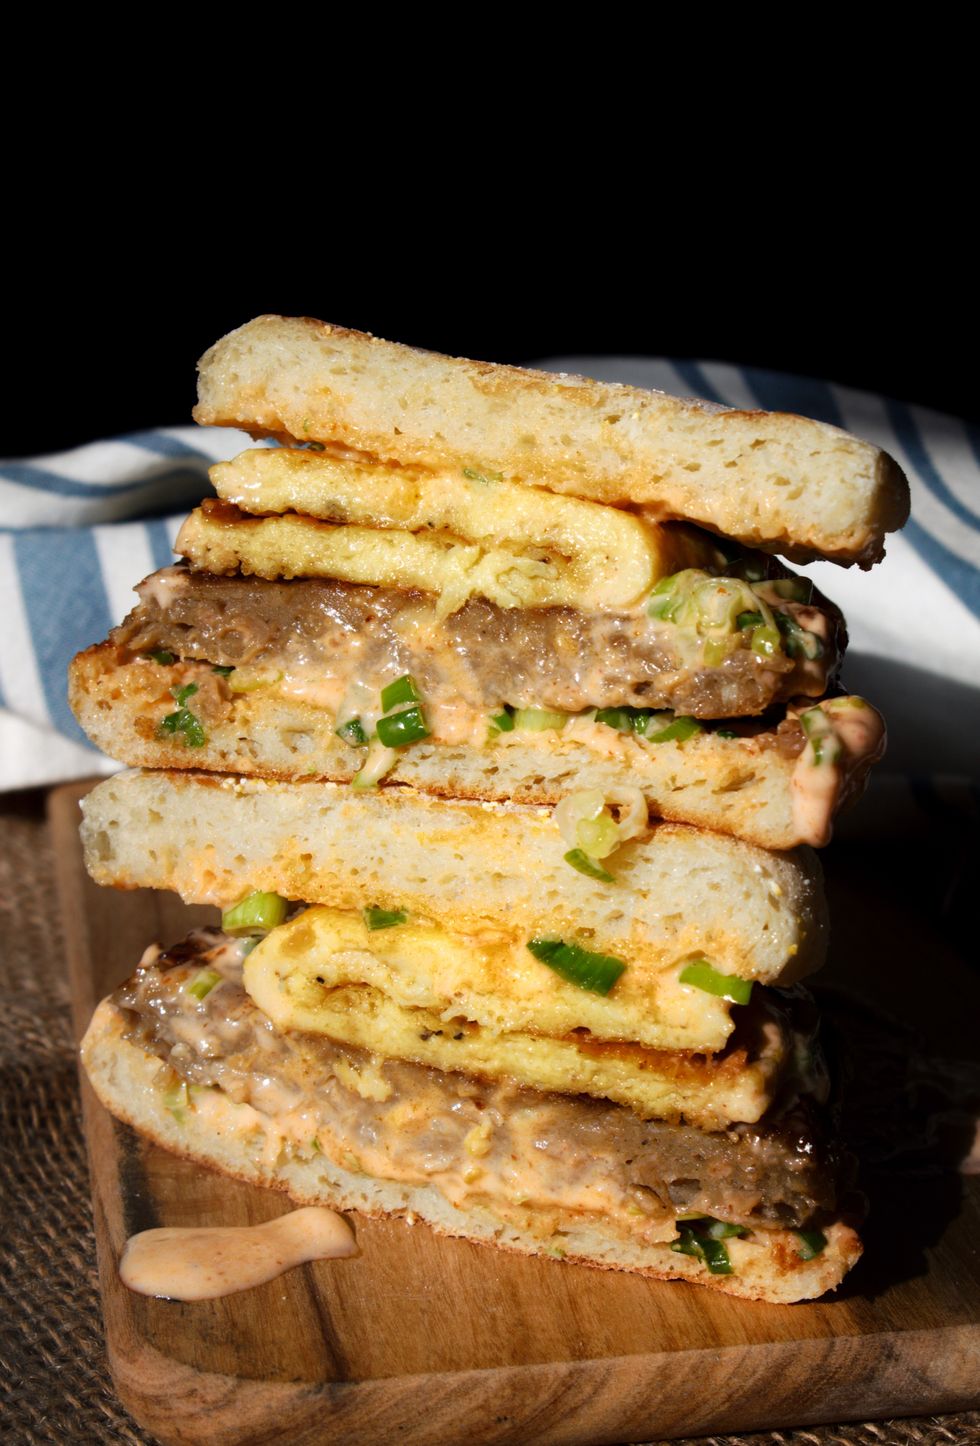 A vegan breakfast sandwich is on a wooden surface.